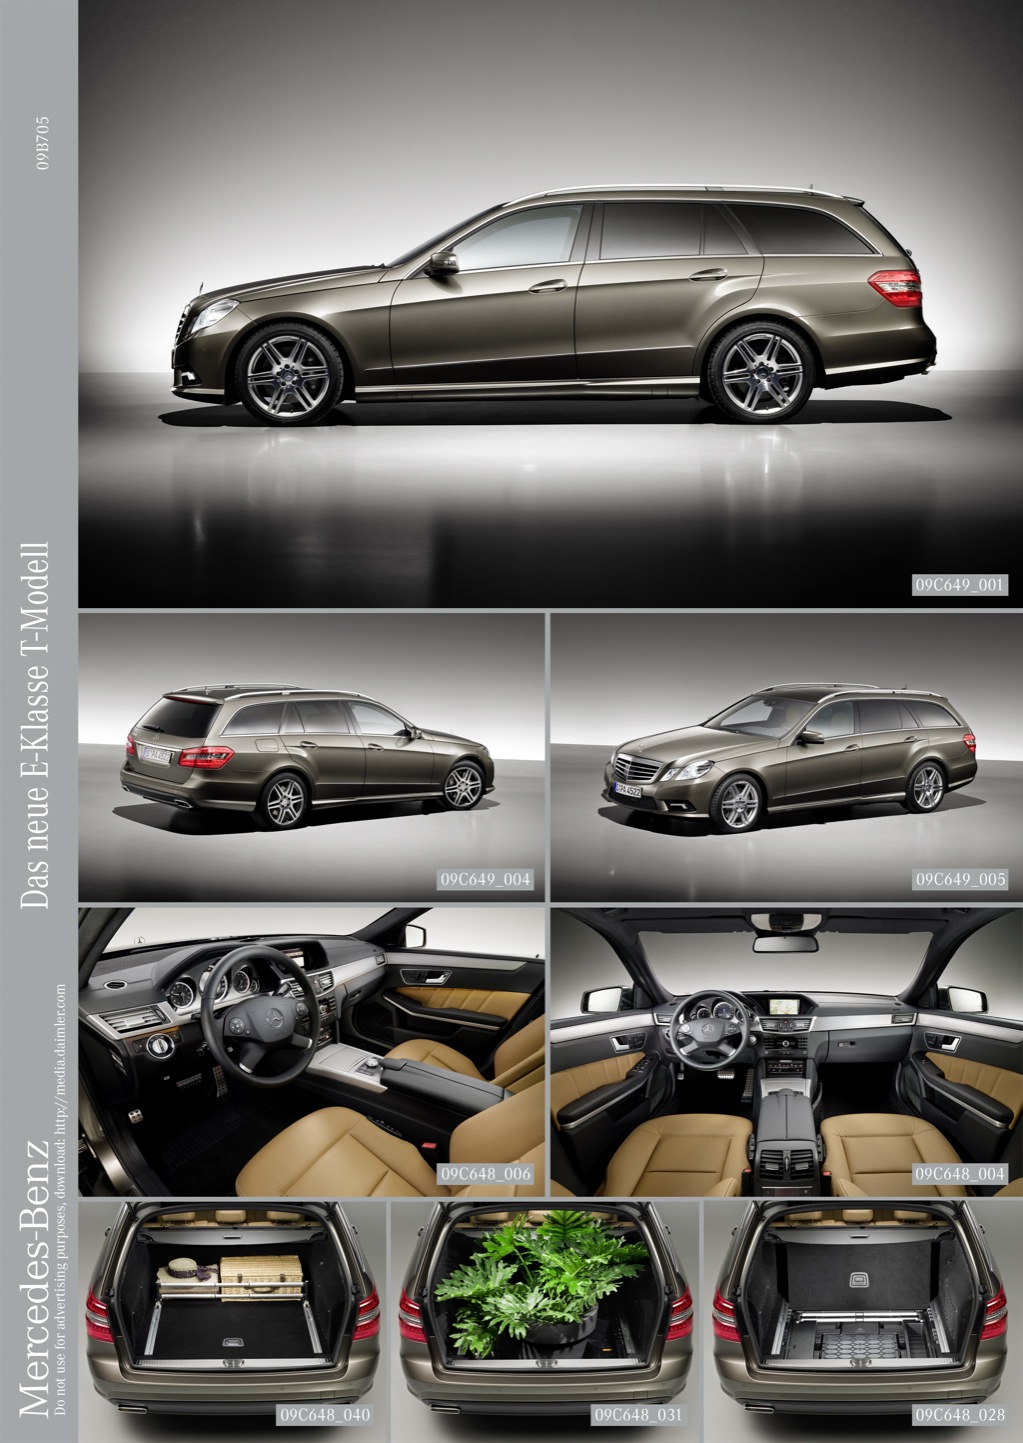 2010 Mercedes E-Klasse Estate Official Details and Photos - autoevolution